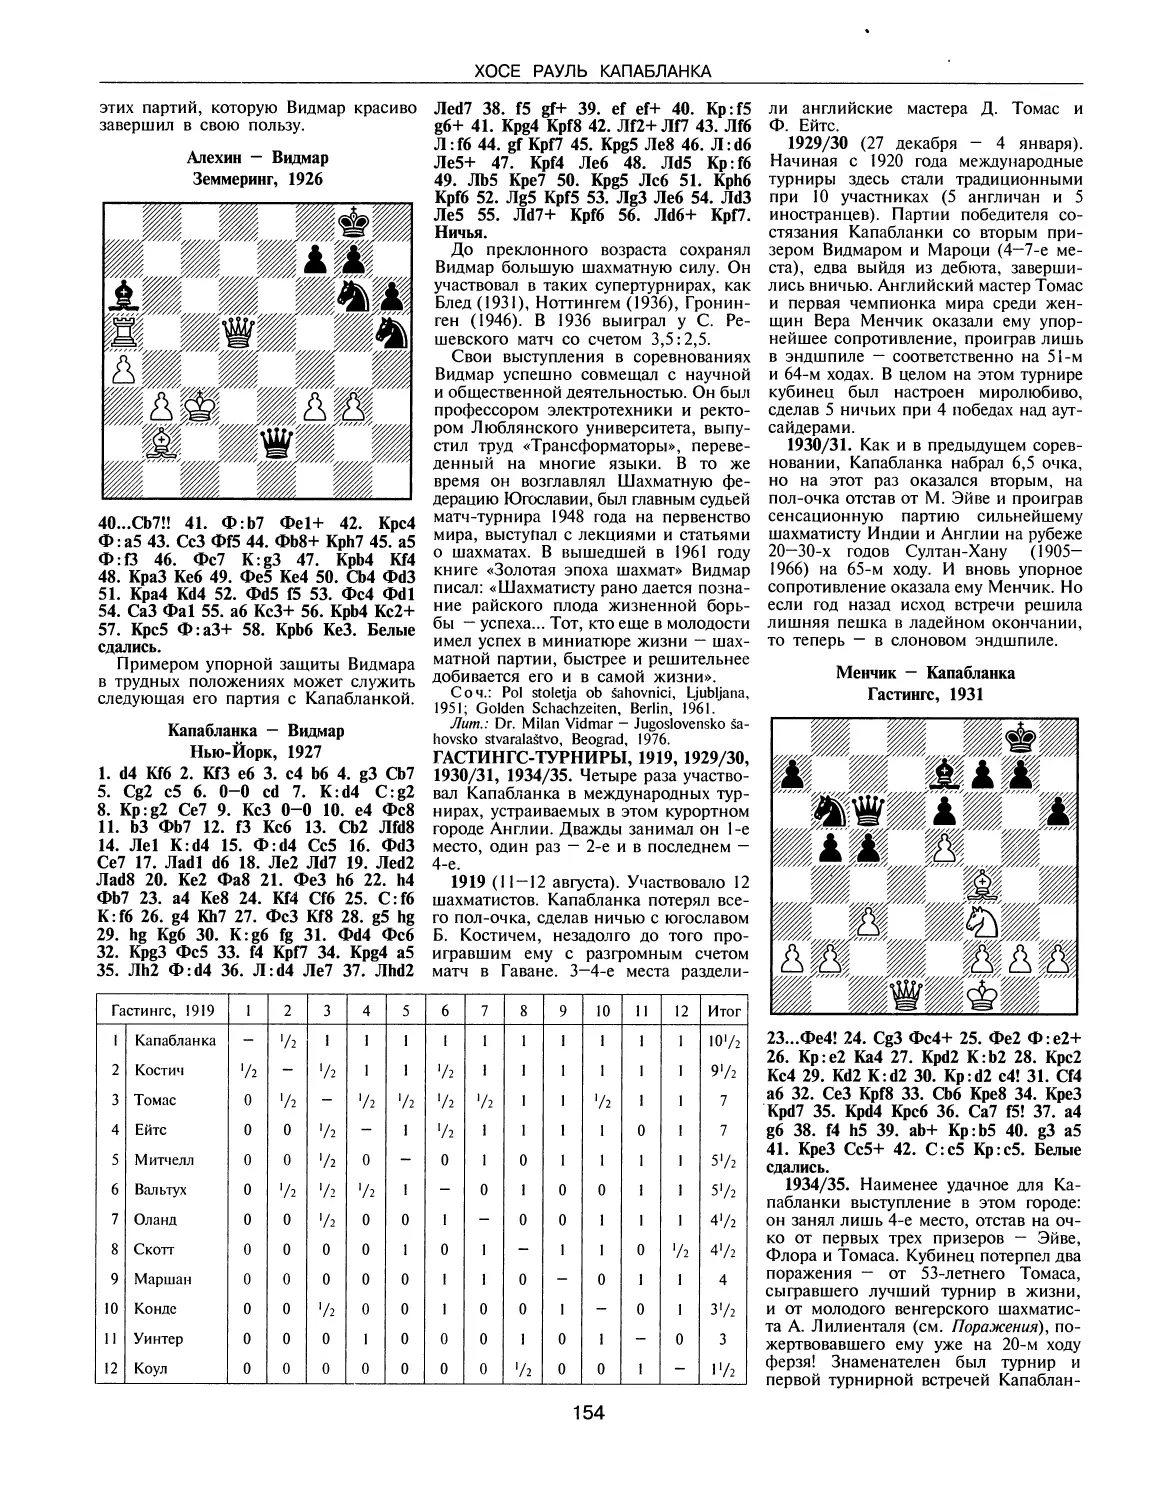 Гастингс-турниры, 1919, 1929/30, 1930/31, 1934/35